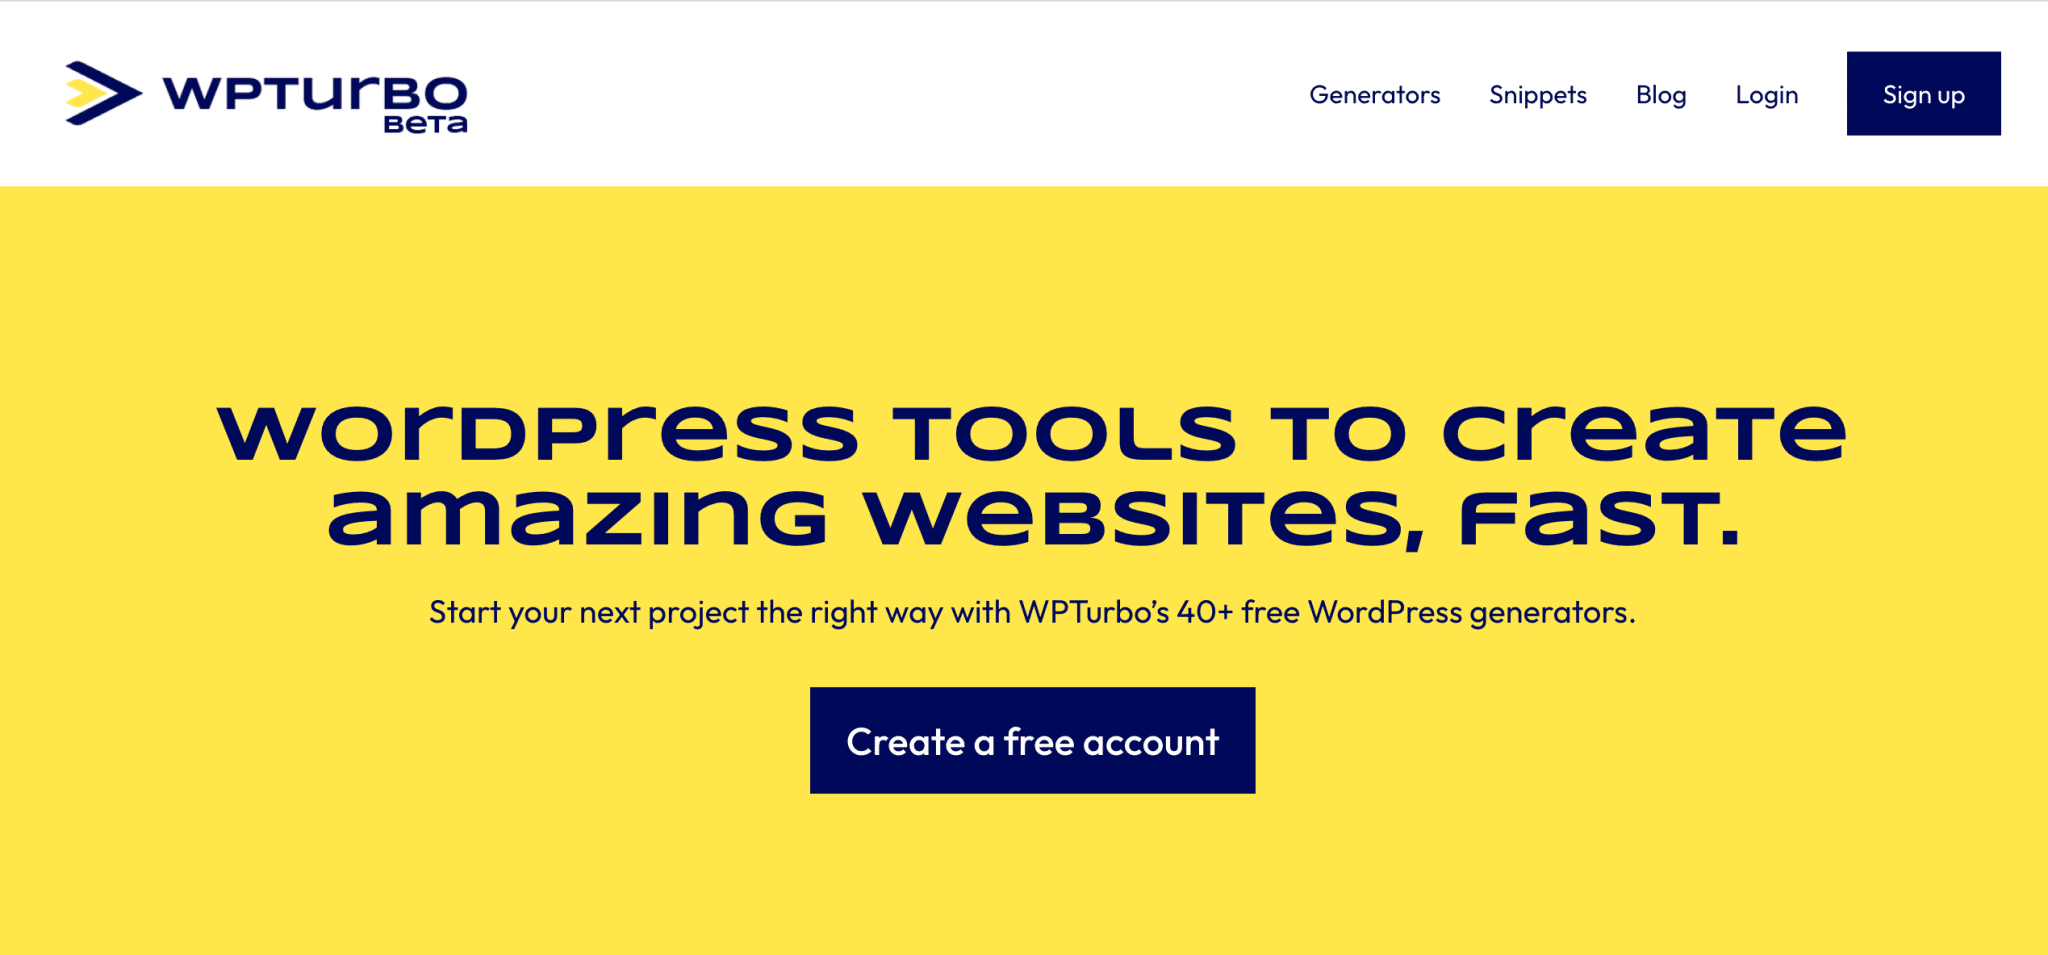 WPTurbo propose des outils et des ressources aux développeurs pour créer des sites WordPress plus rapidement.